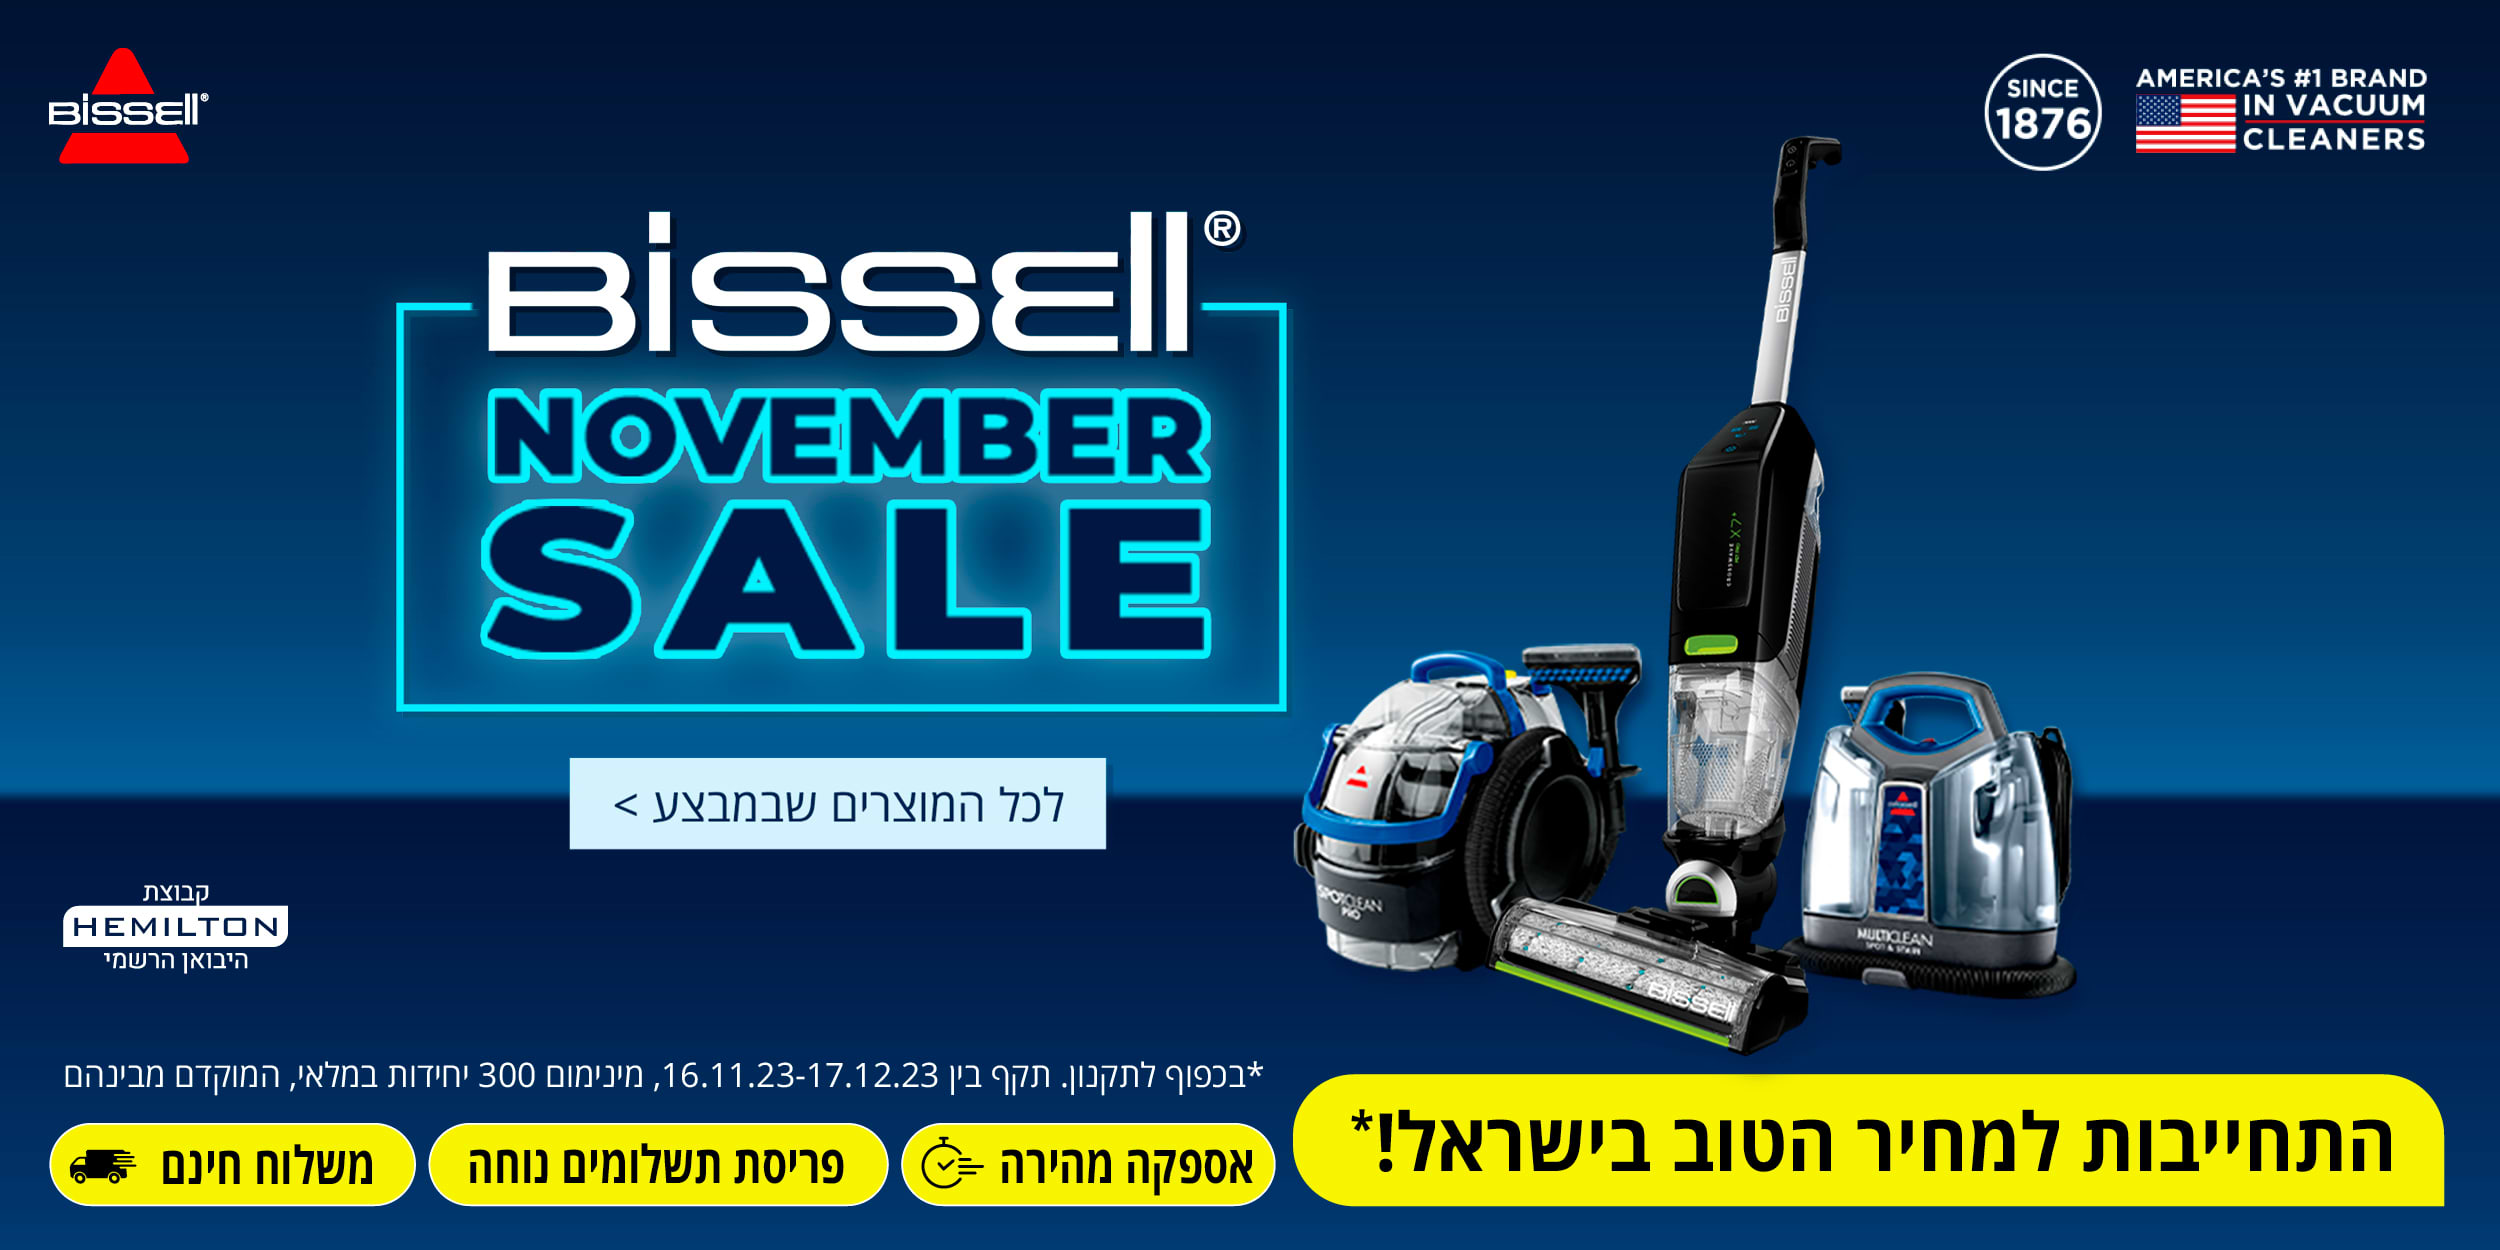 bissell november sale לכל המוצרים שבמבצע > *בכפוף לתקנון. תקף בין 16.11.23-17.12.23, מינימום 300 יחידות במלאי, המוקדם מביניהם